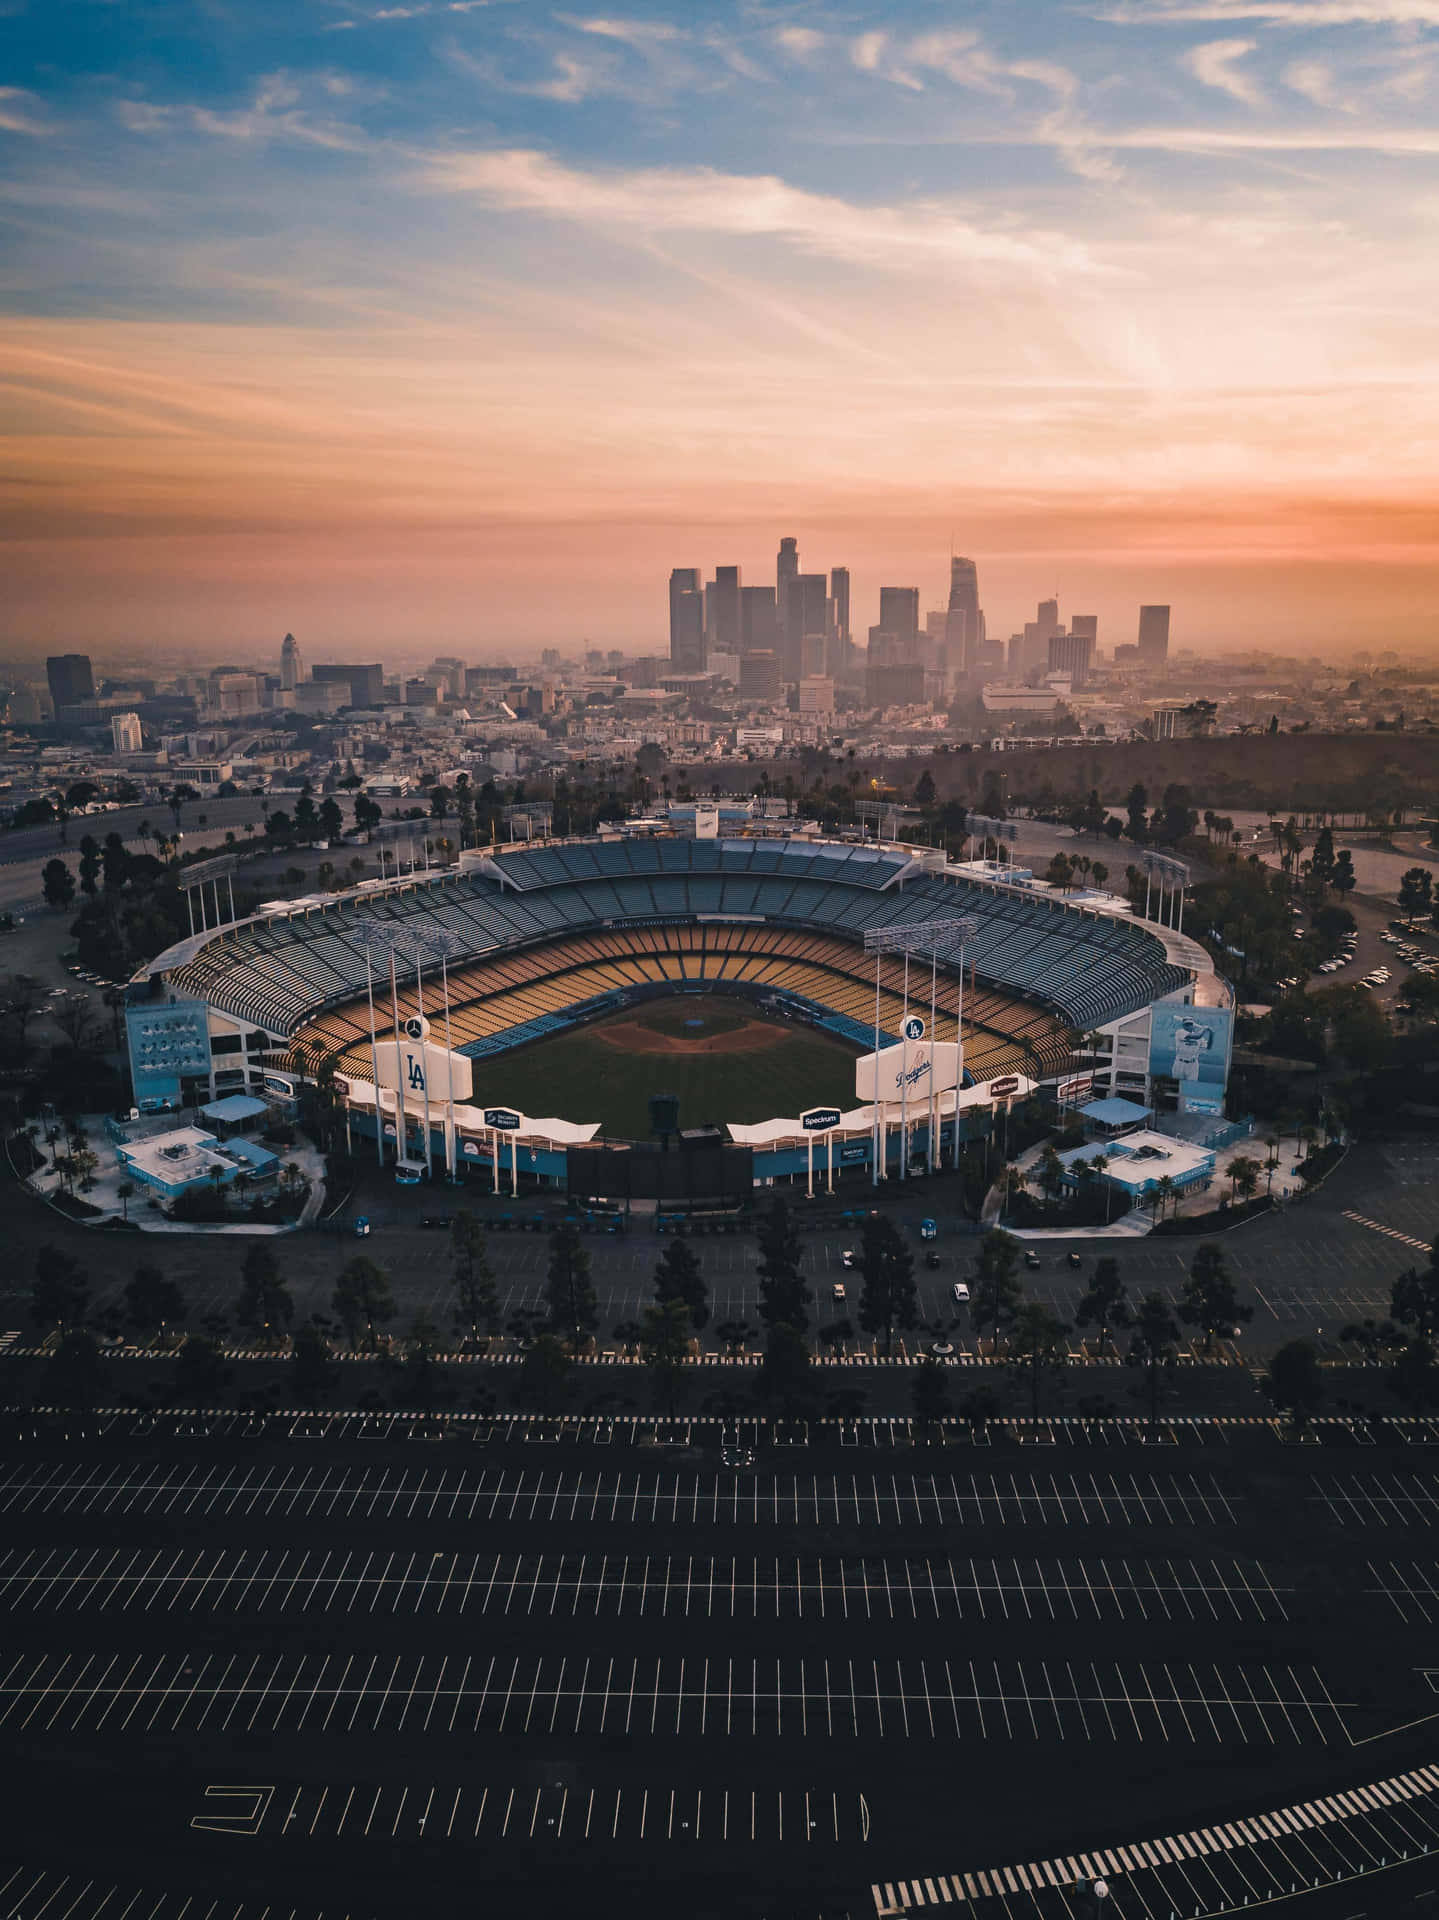 Wunderschöneskyline Von Los Angeles Mit Dem Dodger Stadium Im Vordergrund Wallpaper